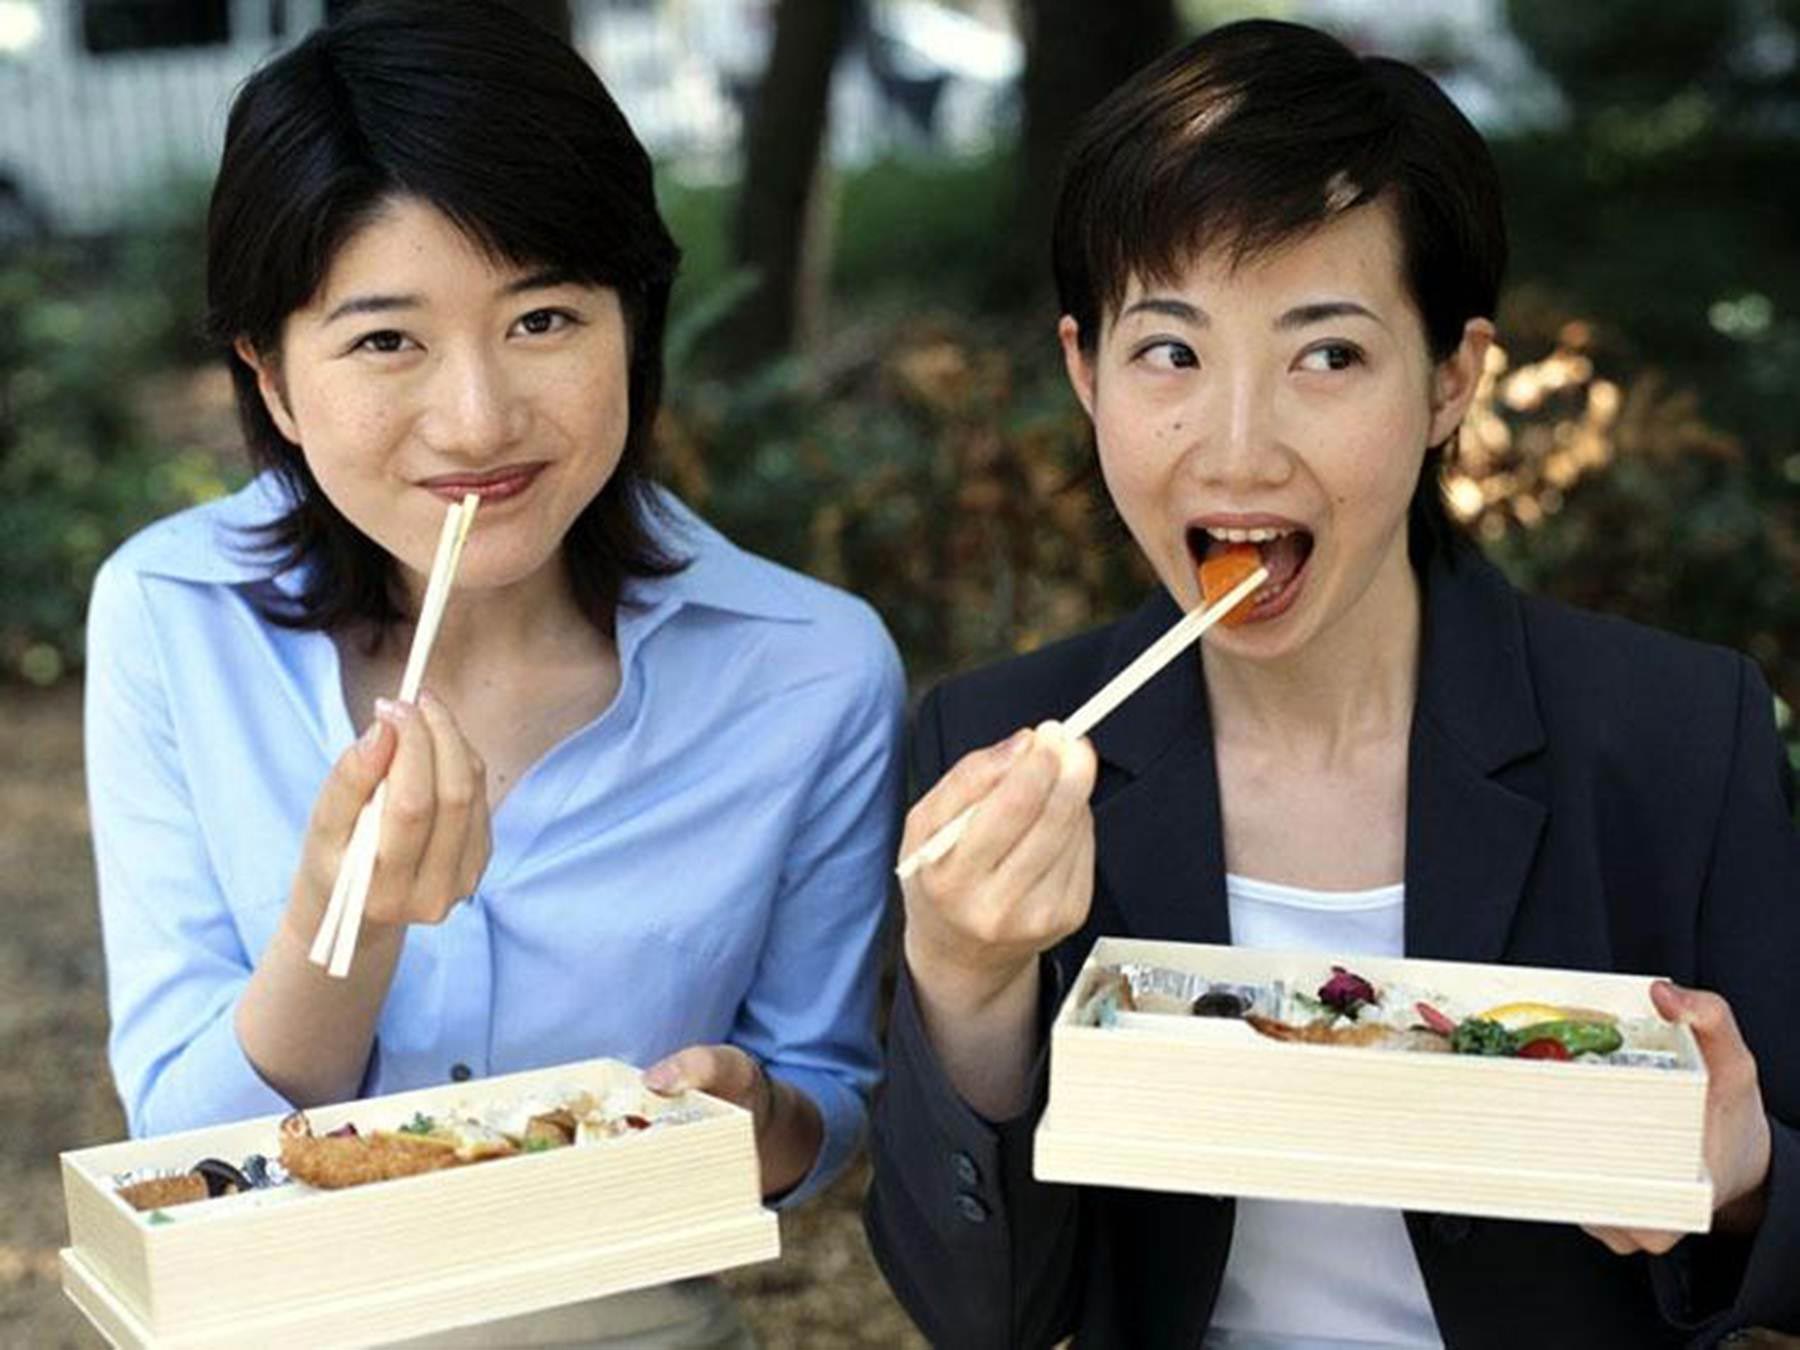 Японцы и европейцы. Корейцы едят палочками. Японцы едят палочками. Японцы обедают. Японцы едят суши.